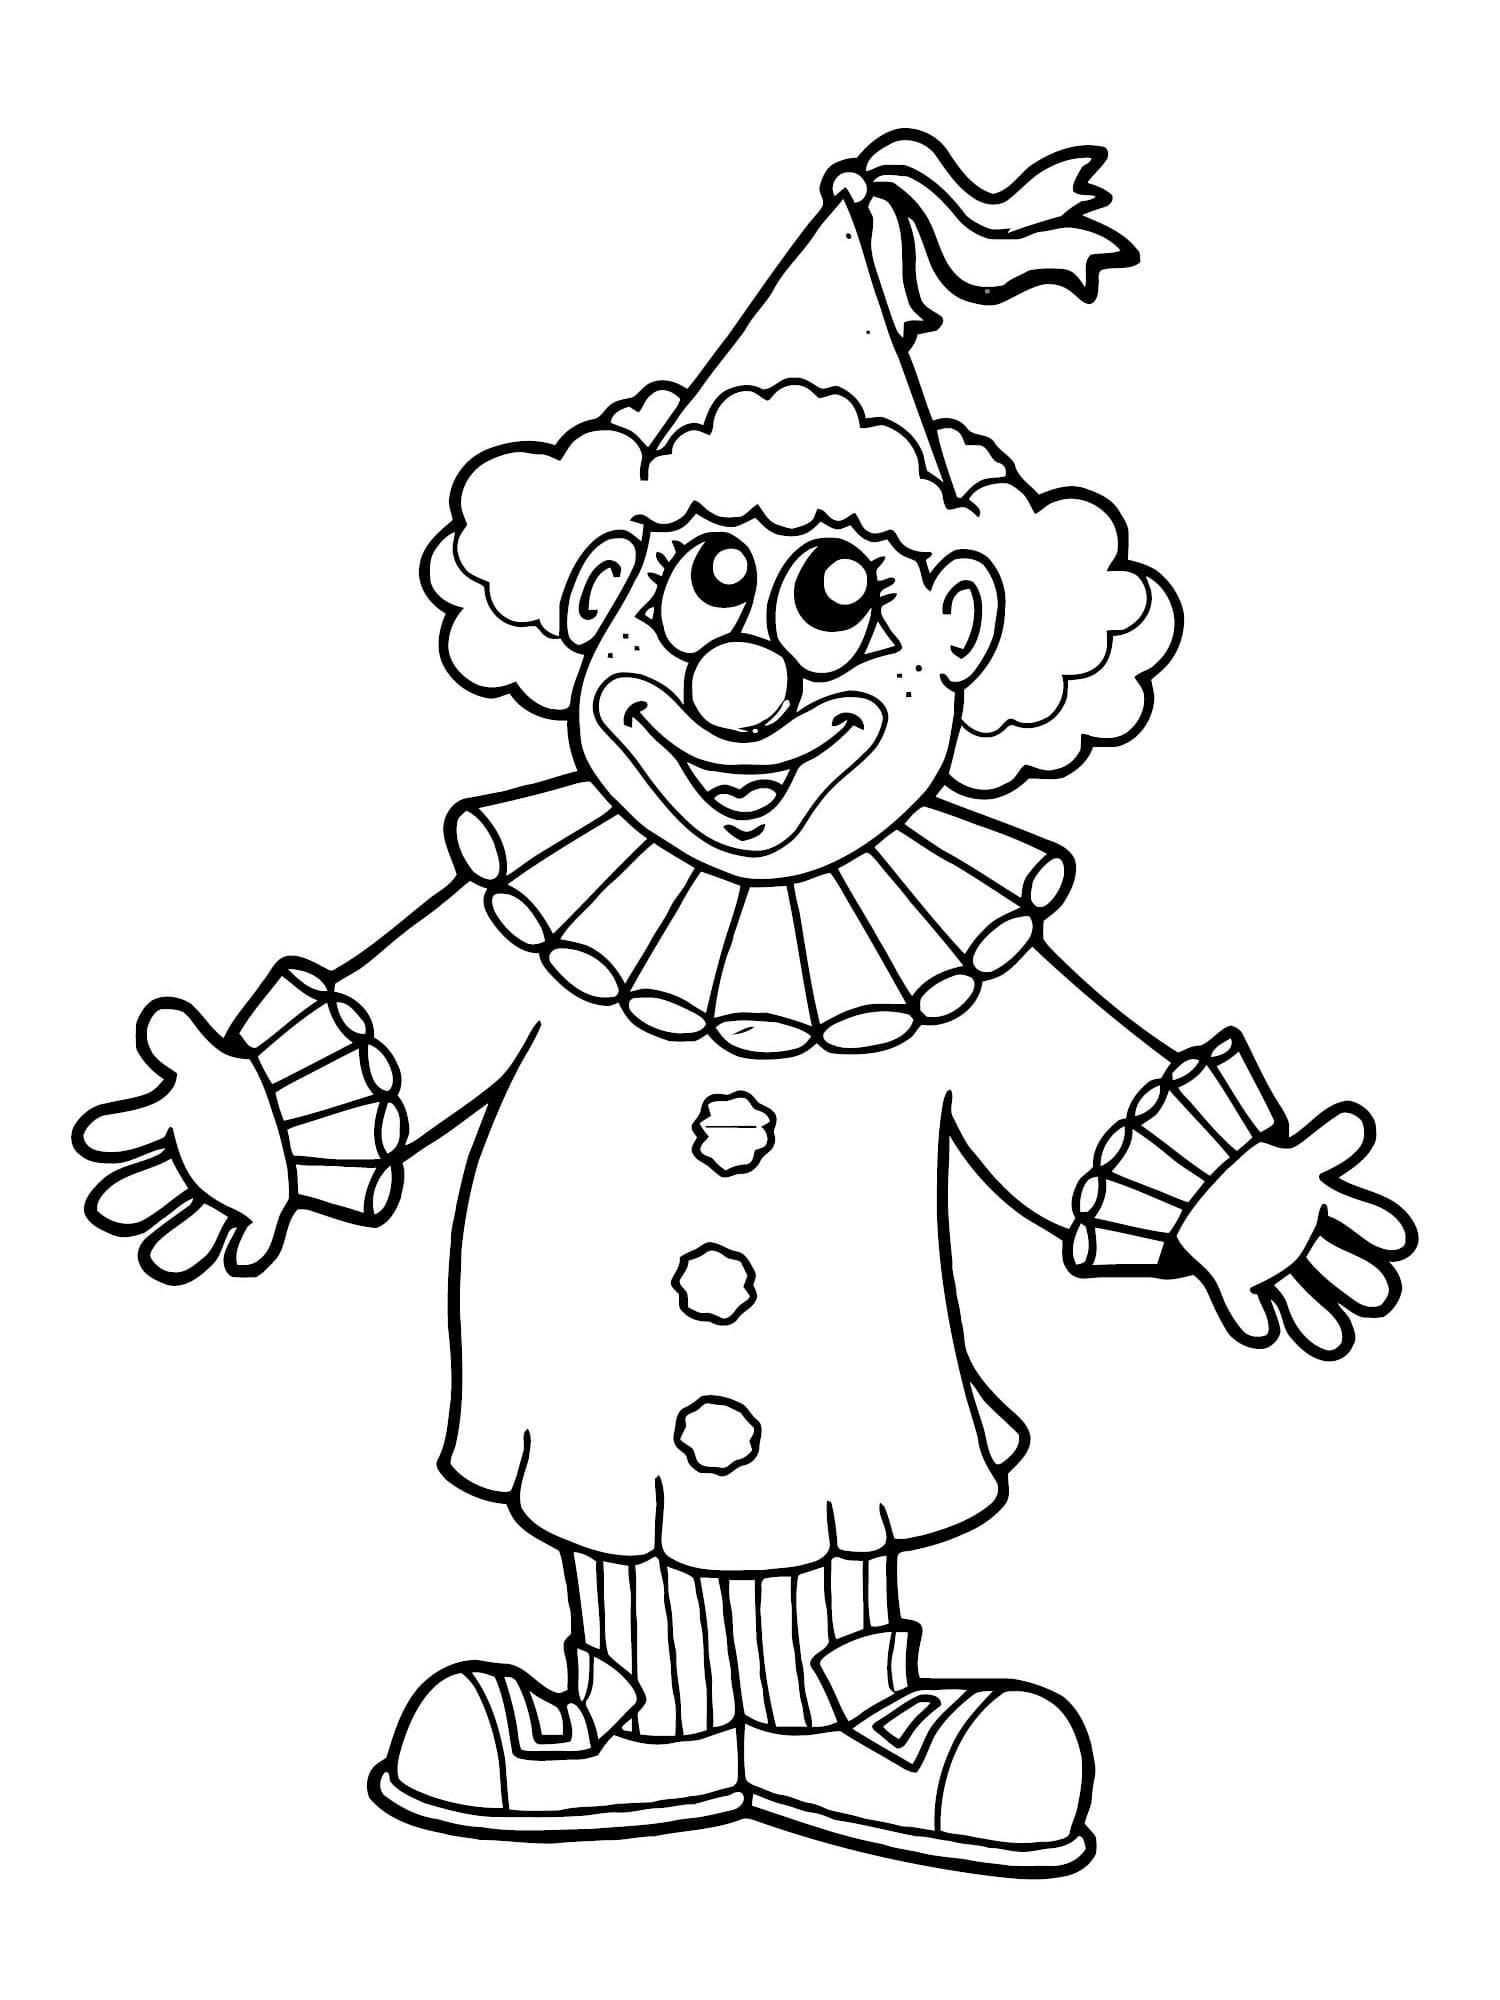 Un Clown Heureux coloring page